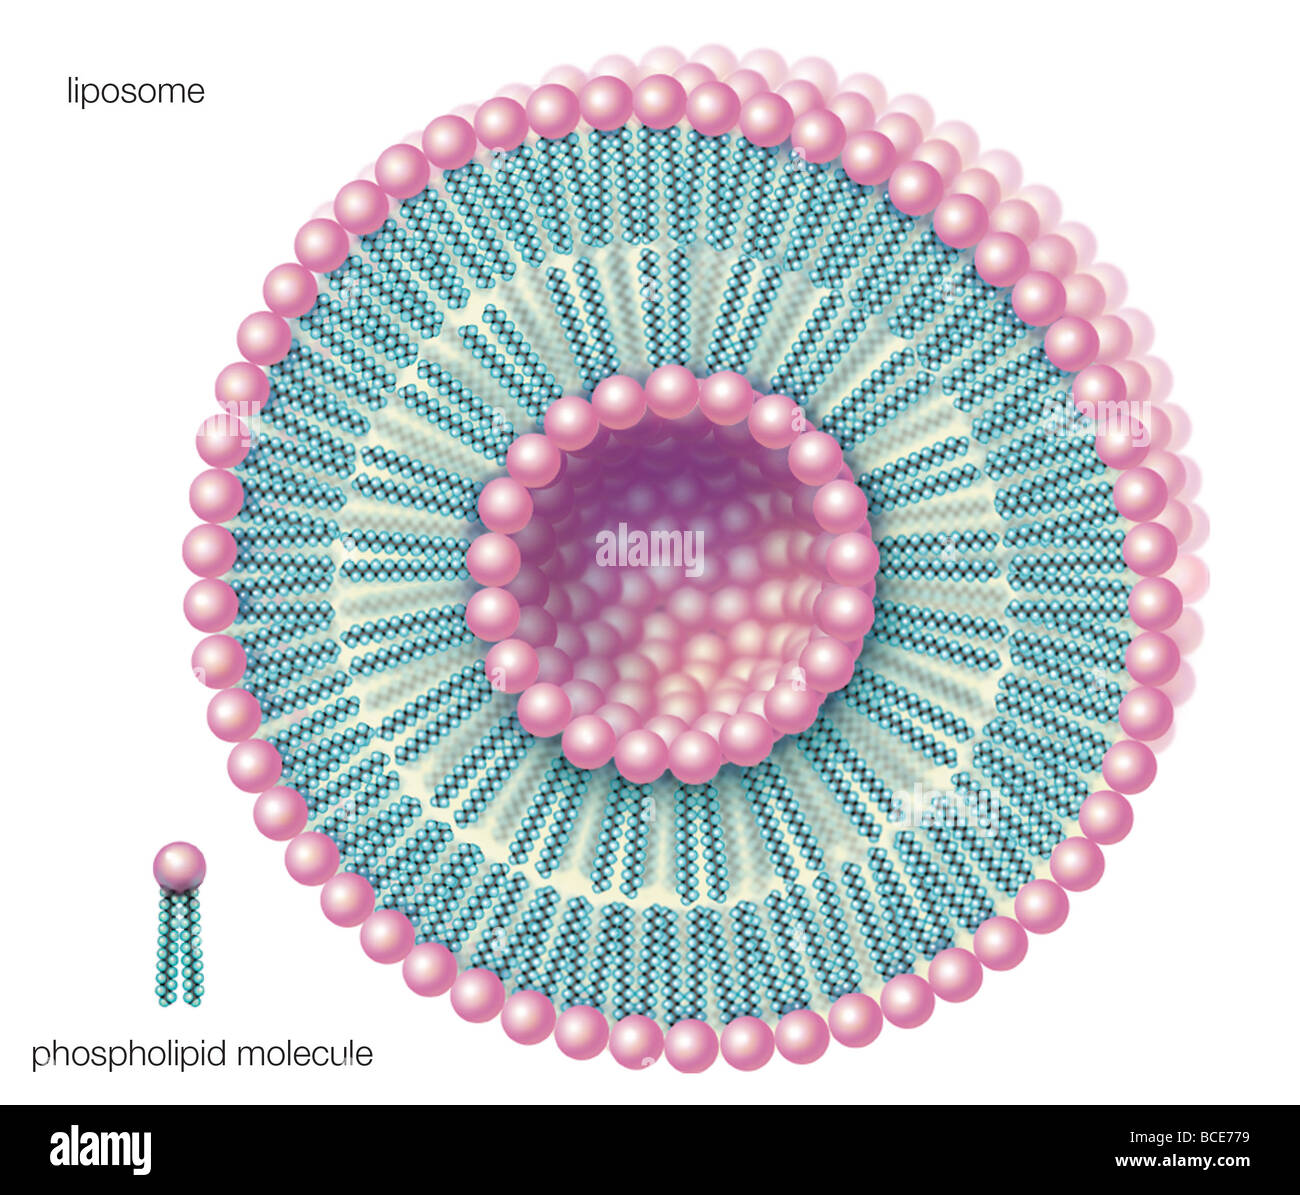 Les phospholipides peuvent former, à double paroi sphères creuses appelées liposomes, utile d'encapsuler des molécules telles que les produits pharmaceutiques. Banque D'Images